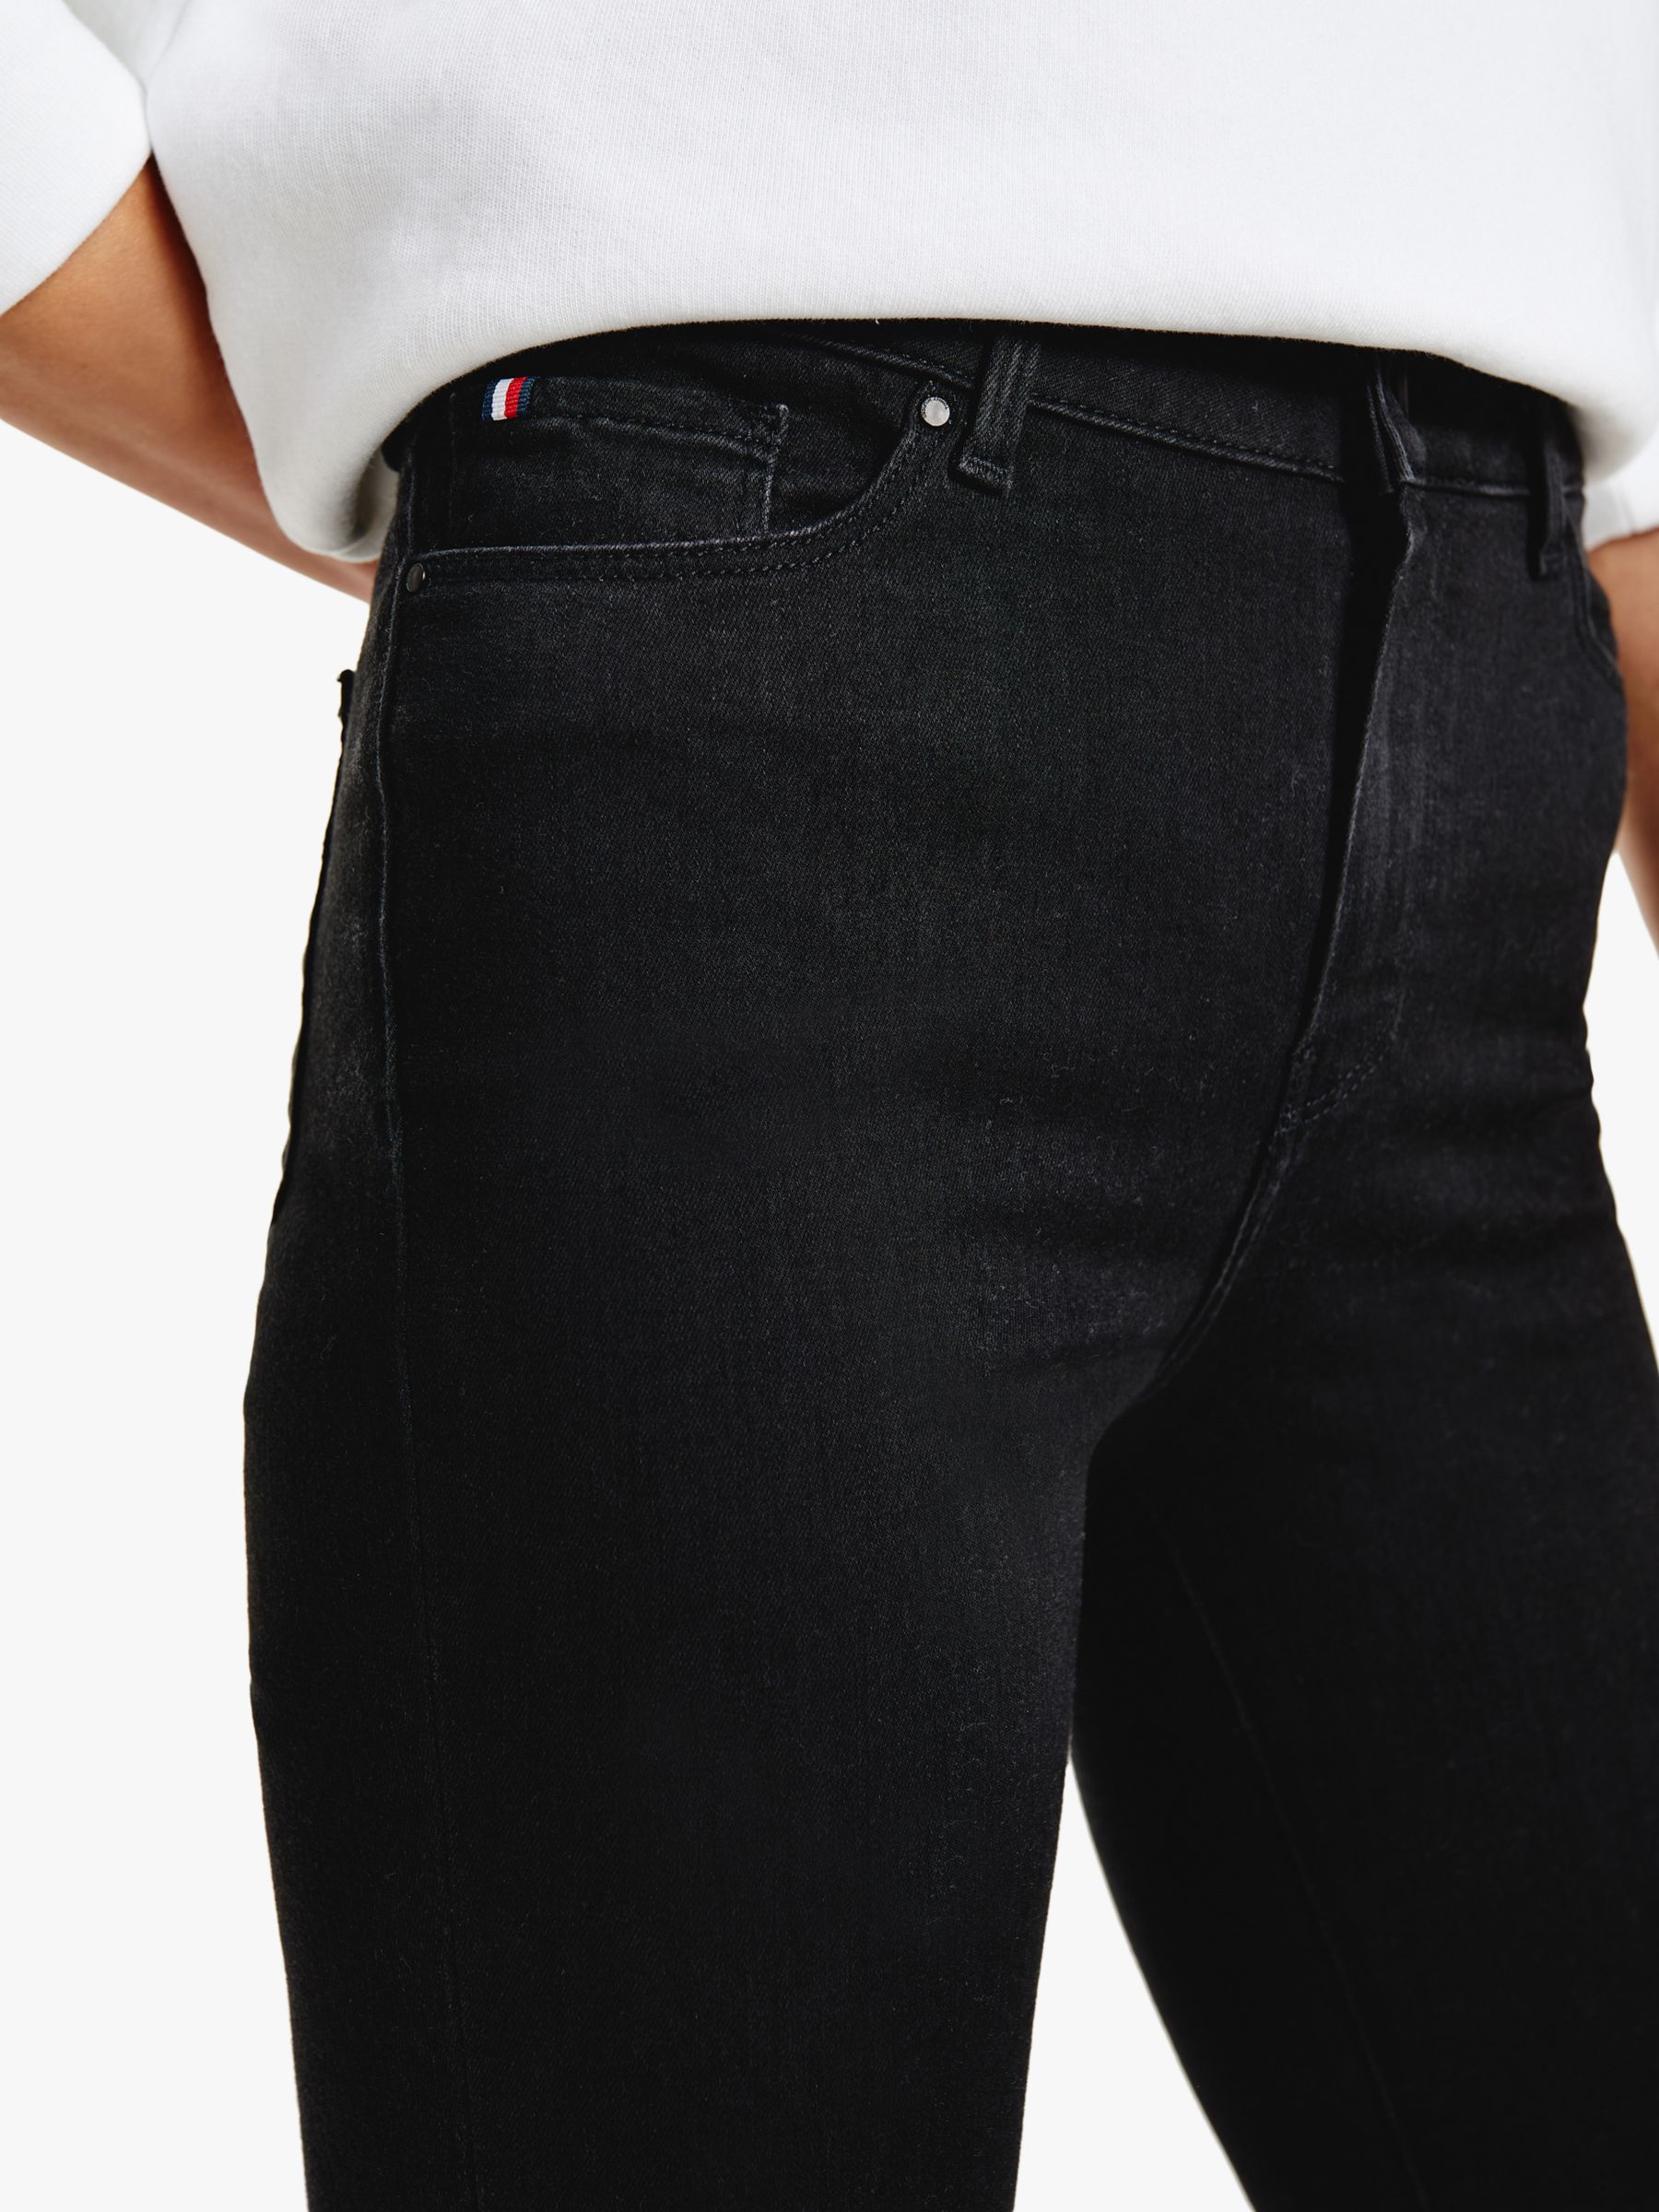 Tommy Hilfiger Harlem Skinny Jeans, Black, 25S